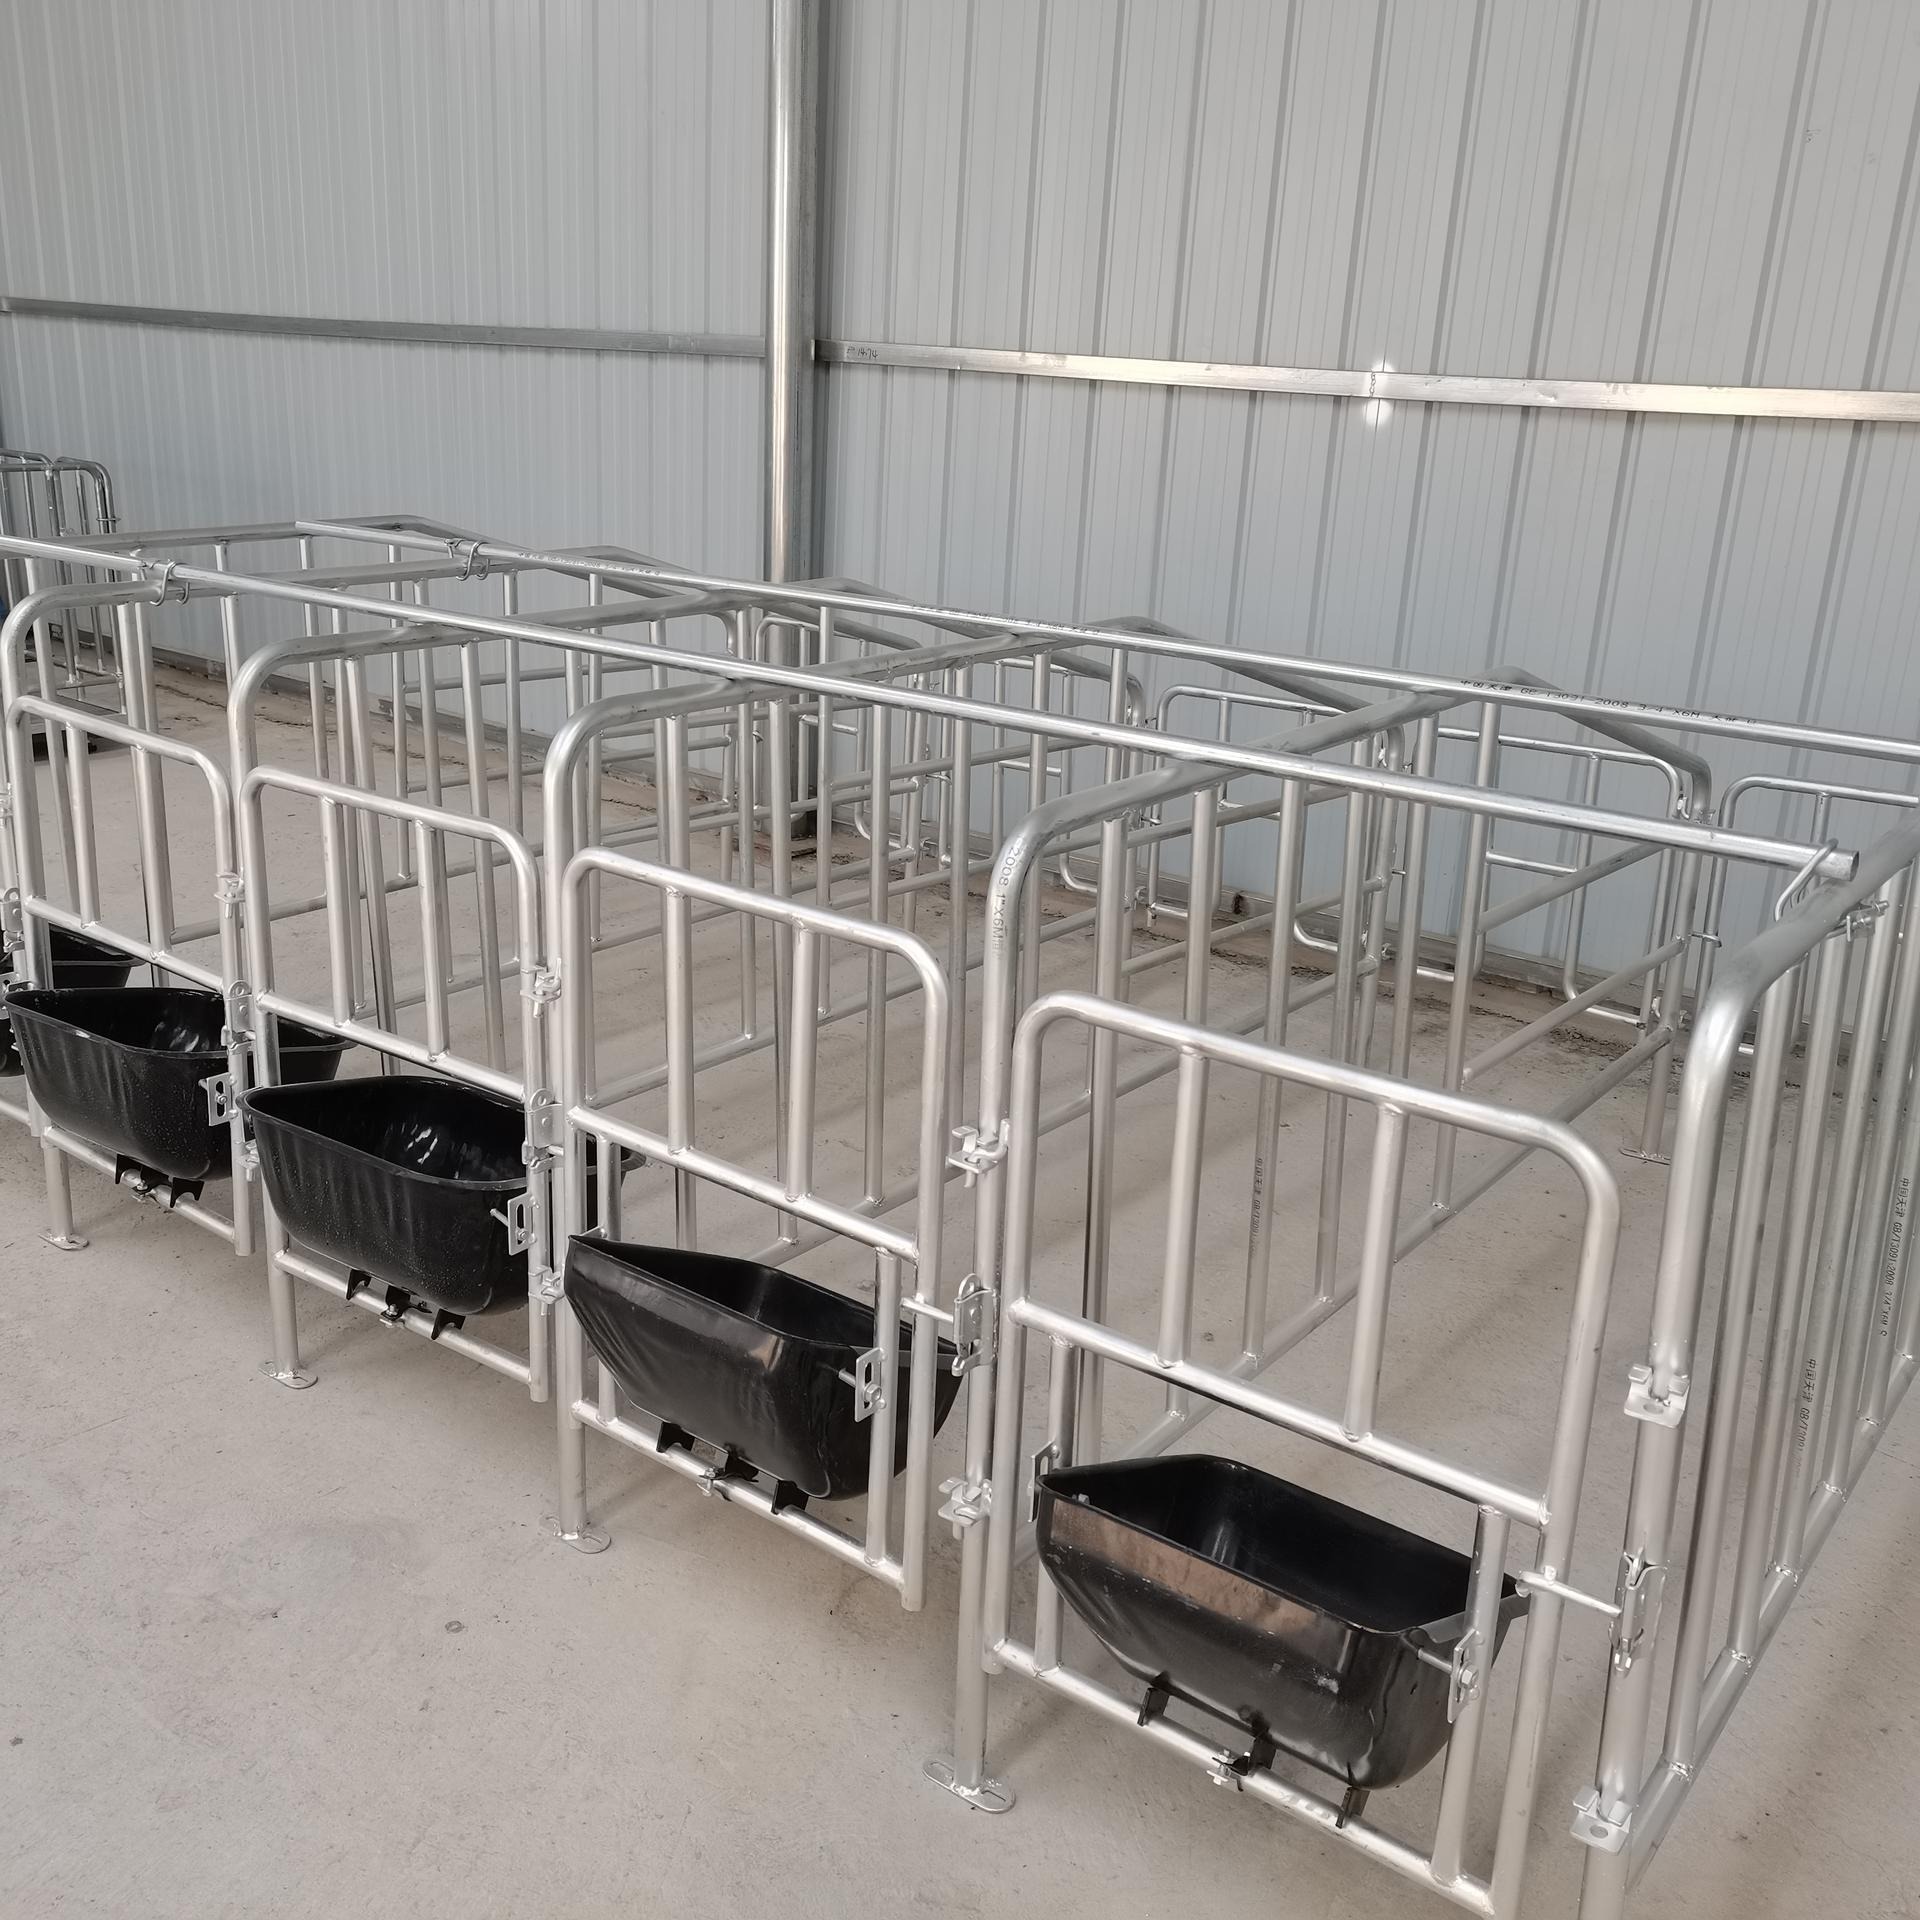 高床限位养猪定位栏 海丫养殖 养猪设备落地式定位栏干净卫生图片